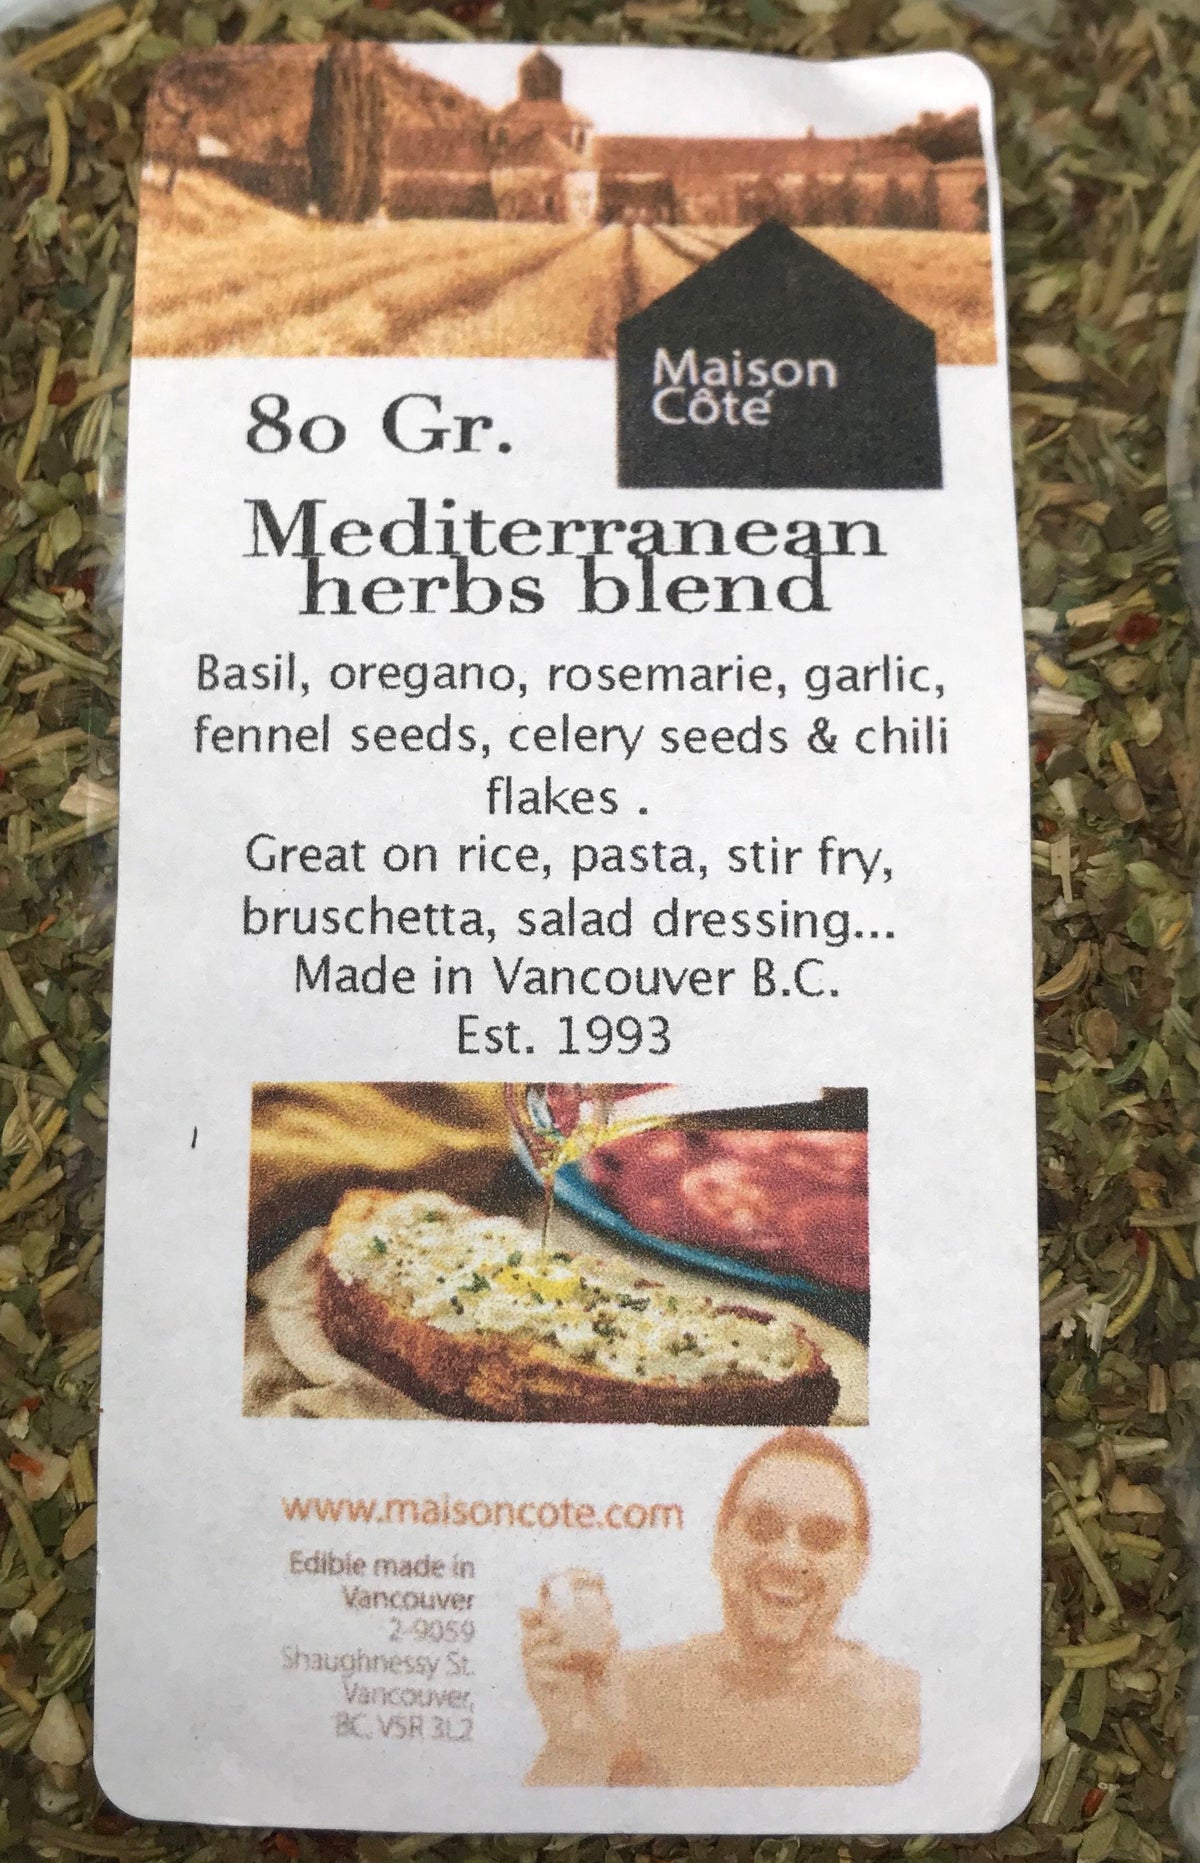 Mediterranean herbs blend